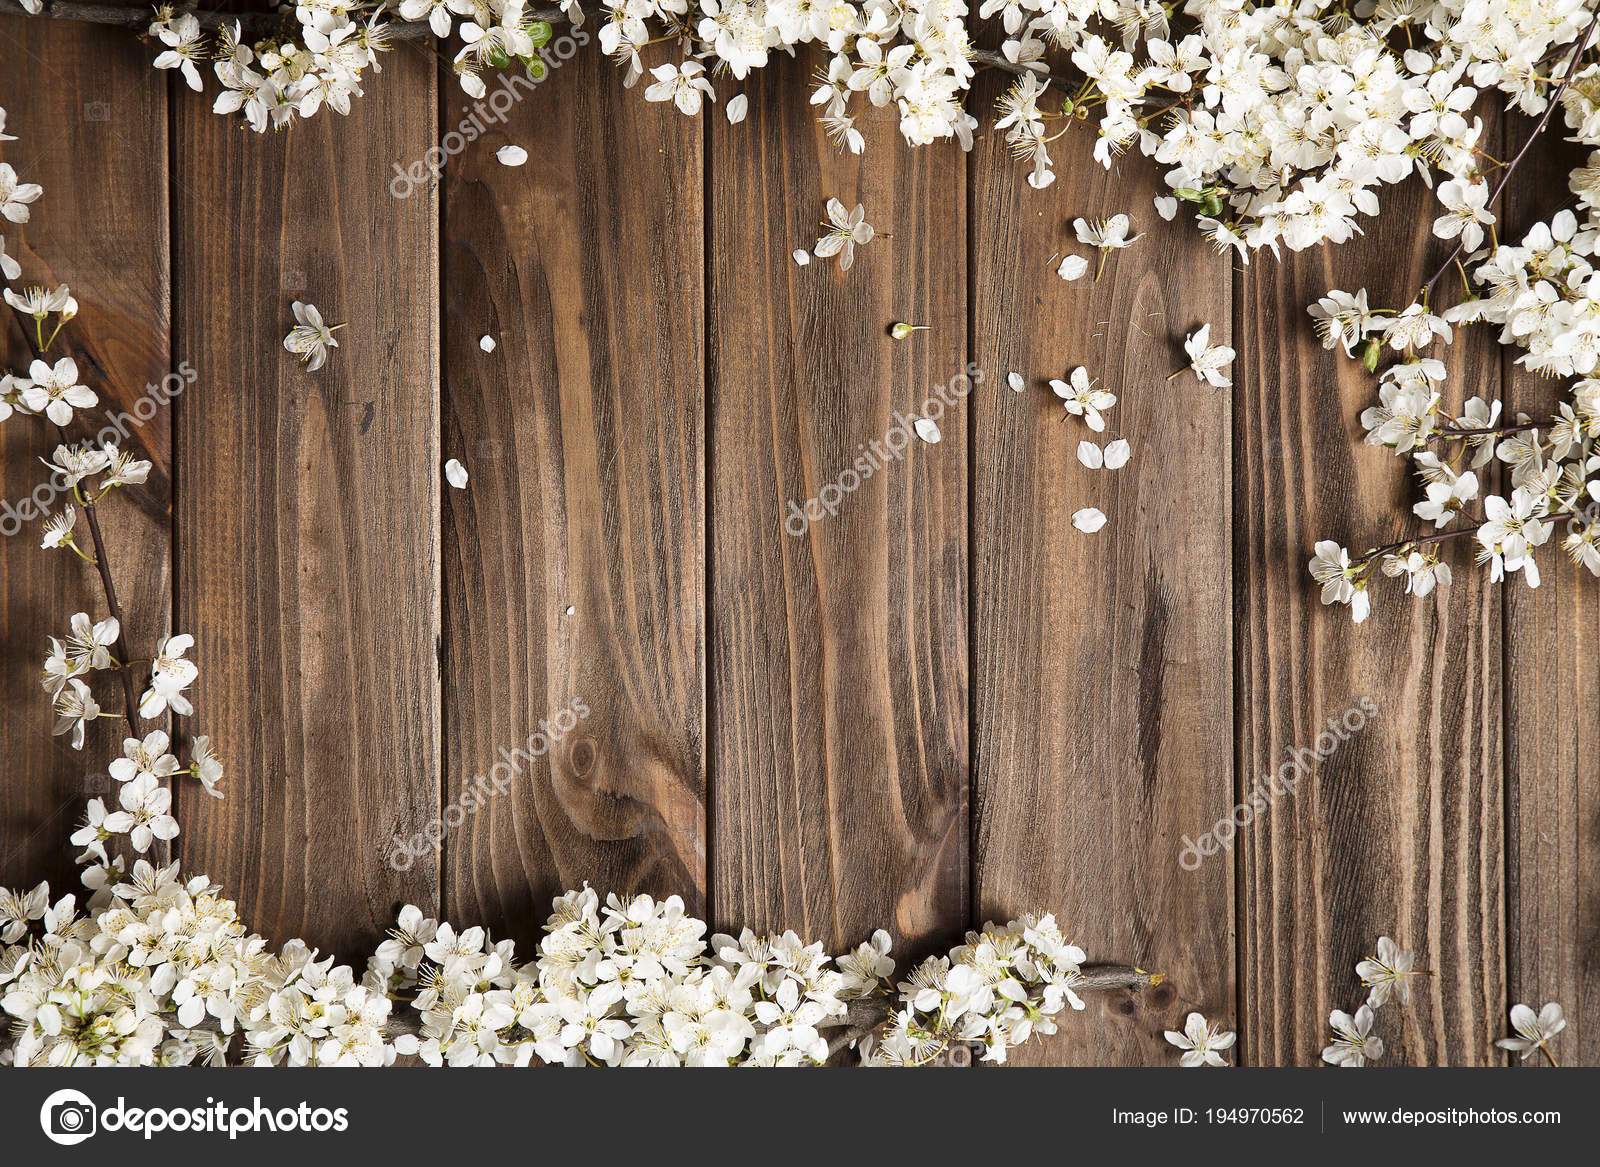 Flower wood мм2. Деревянный фон. Цветы на деревянном фоне. Деревянный фон с цветами. Фотофон дерево.